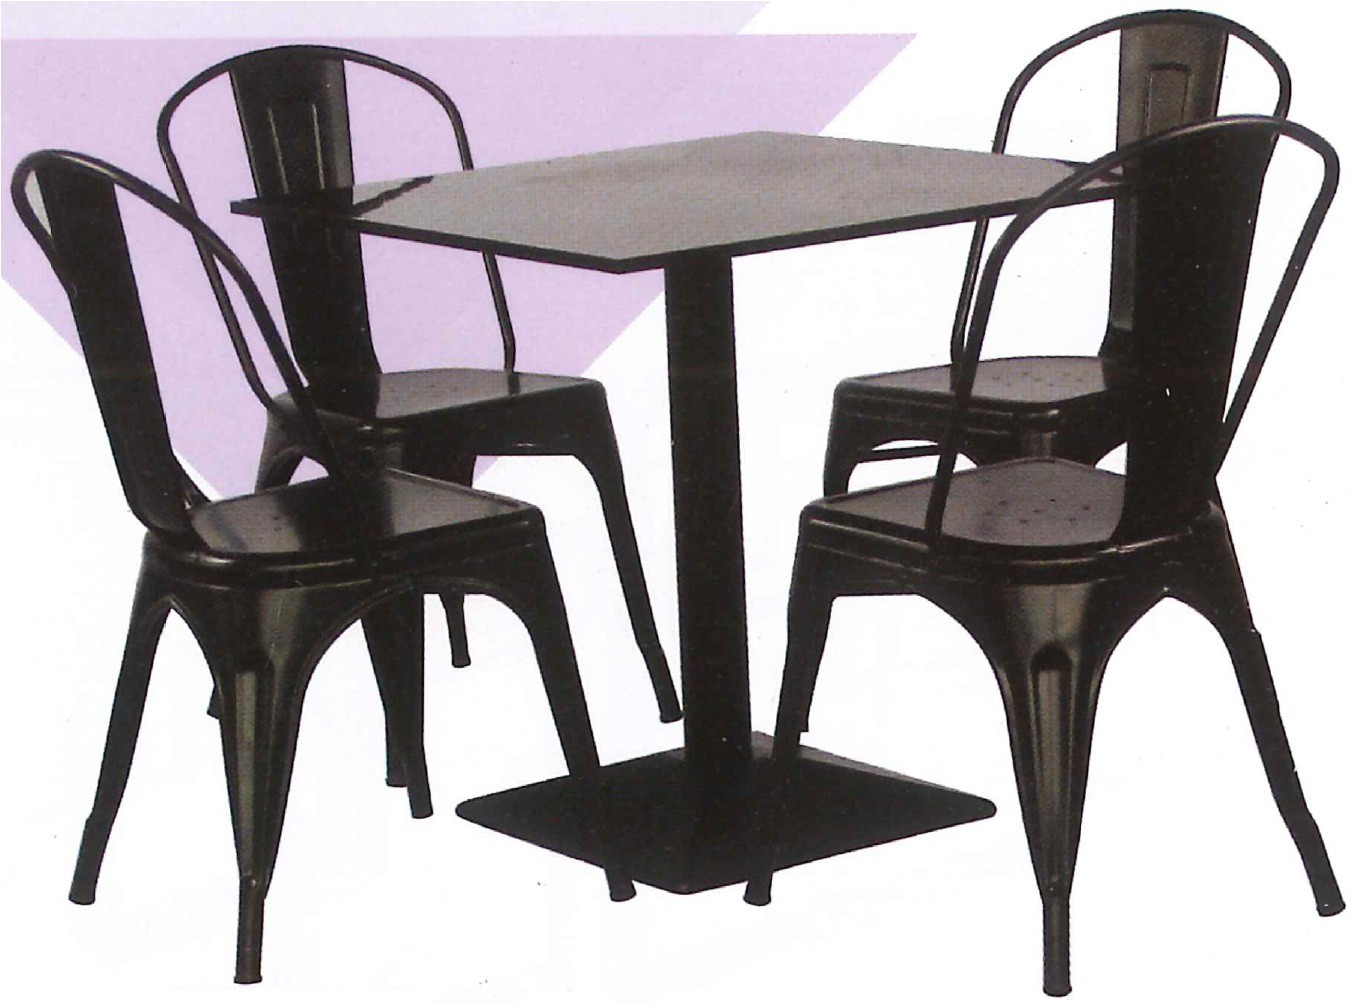 DG/ABB-P130,เก้าอี้อาลีบาบามีพนักพิงสีดำ,เก้าอี้พนักพิง,เก้าอี้สีดำ,เก้าอี้พนักพิงสีดำ,เก้าอี้ห้องประชุม,เก้าอี้,chair